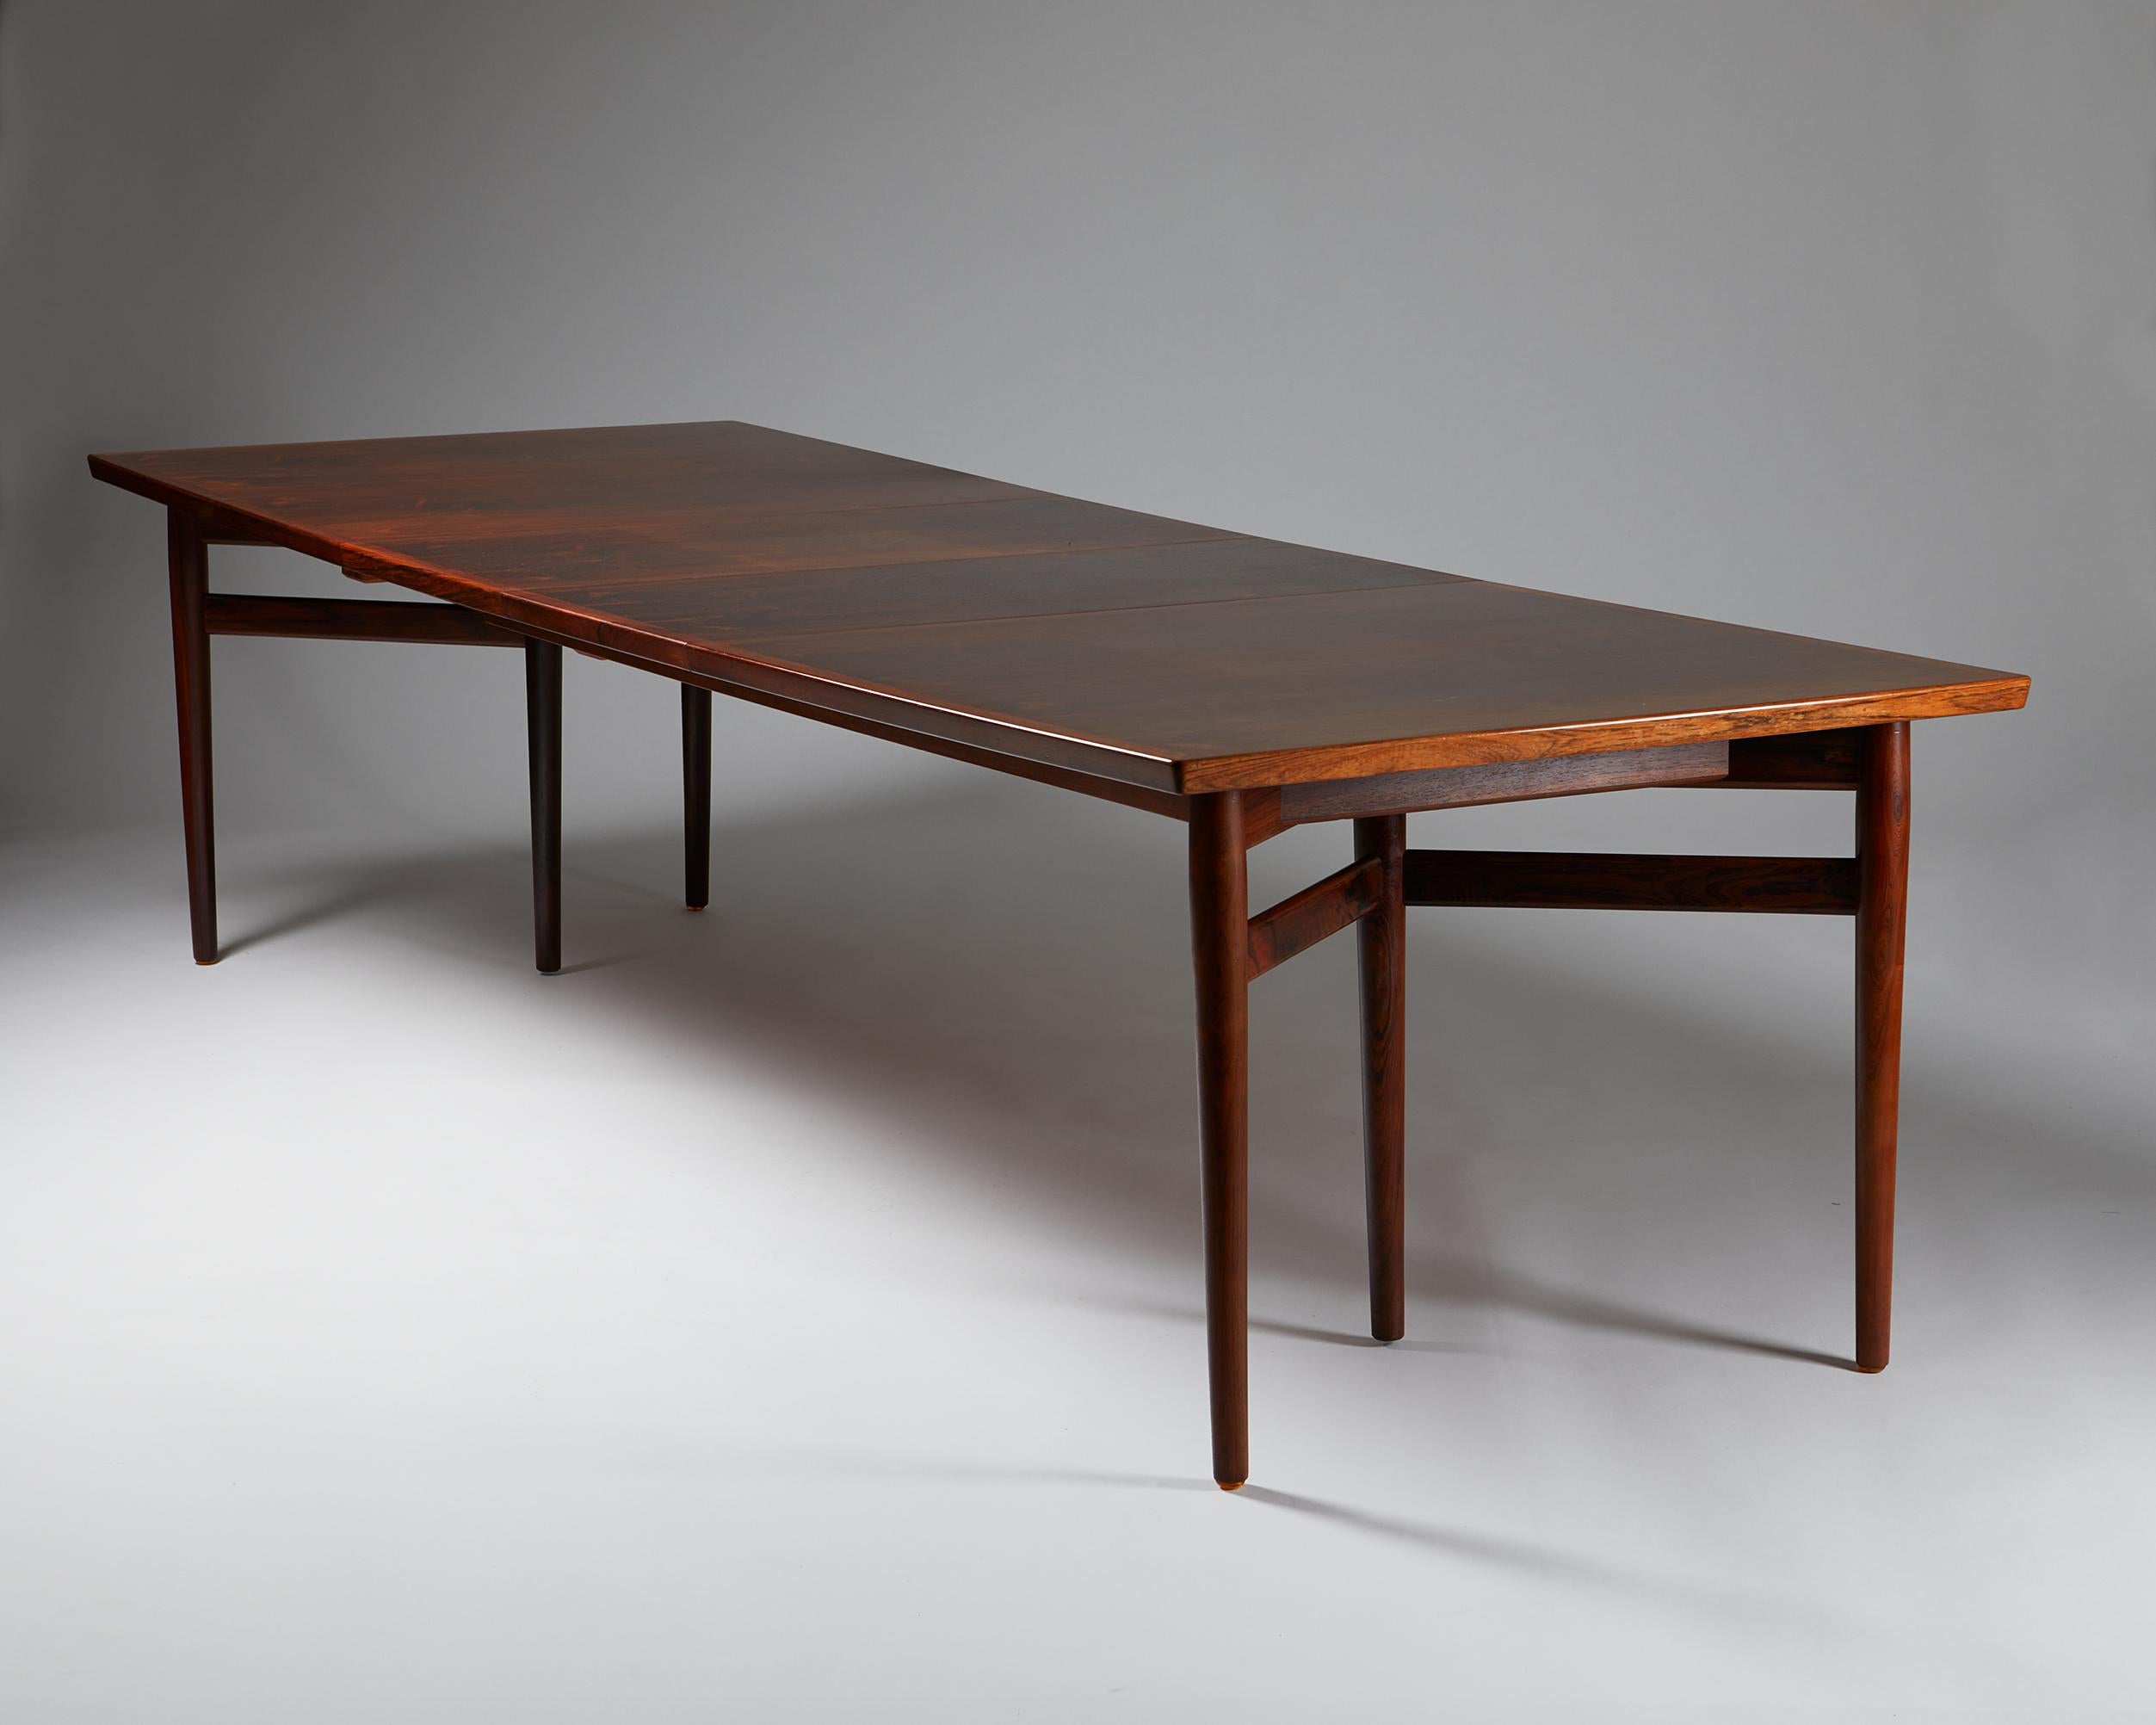 Mid-20th Century Dining Table Designed by Arne Vodder for Sibast, Denmark, 1960's